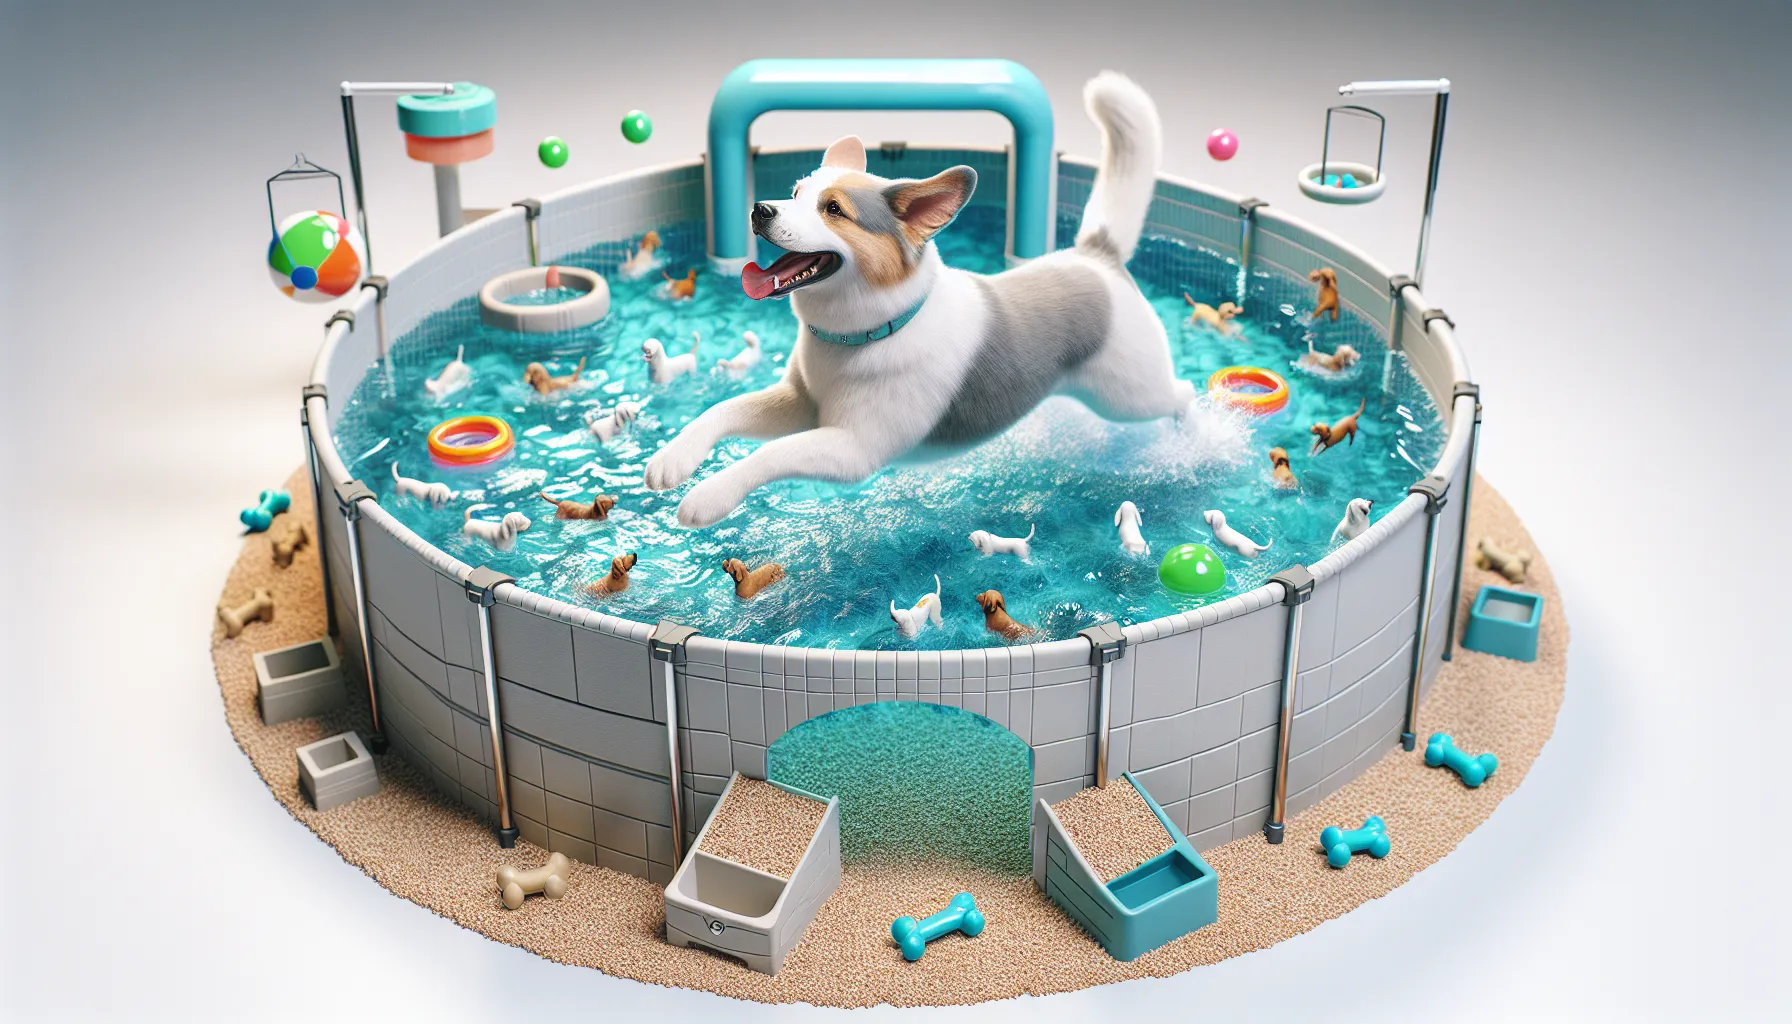 Imagen de un perro disfrutando en una piscina especialmente diseñada para mascotas, rodeado de juguetes acuáticos y con un agua limpia y cristalina.